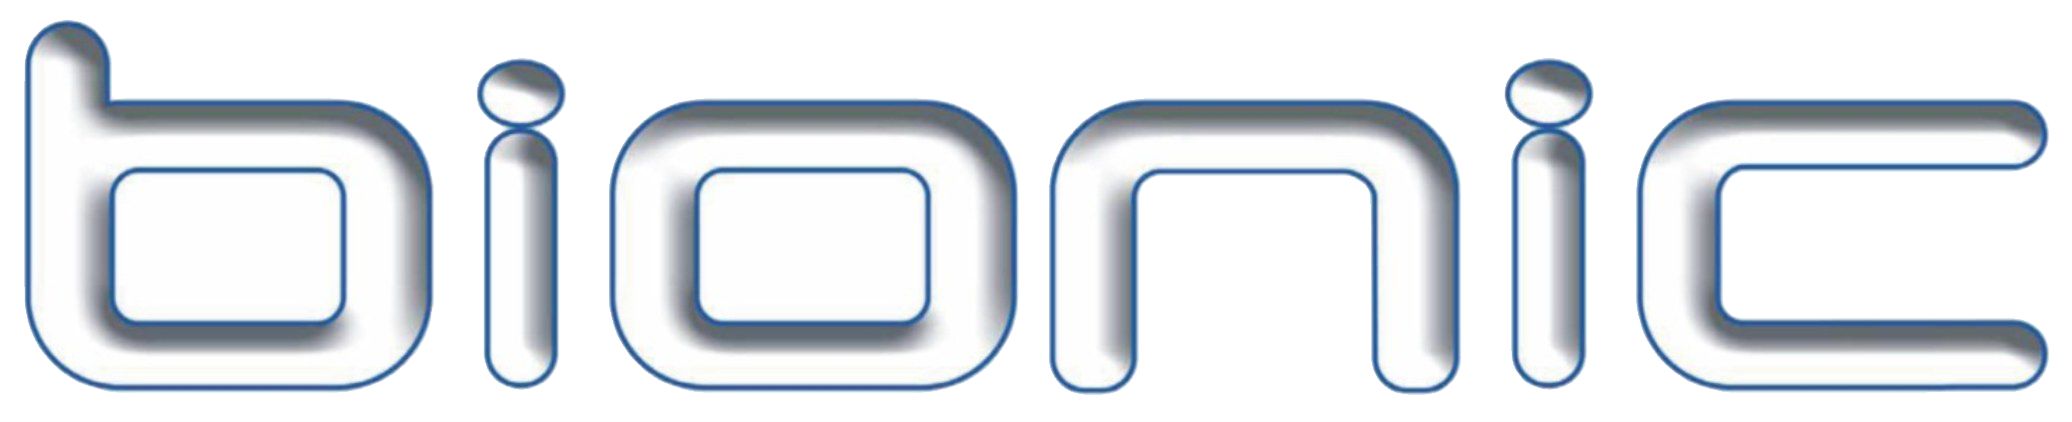 bl logo01